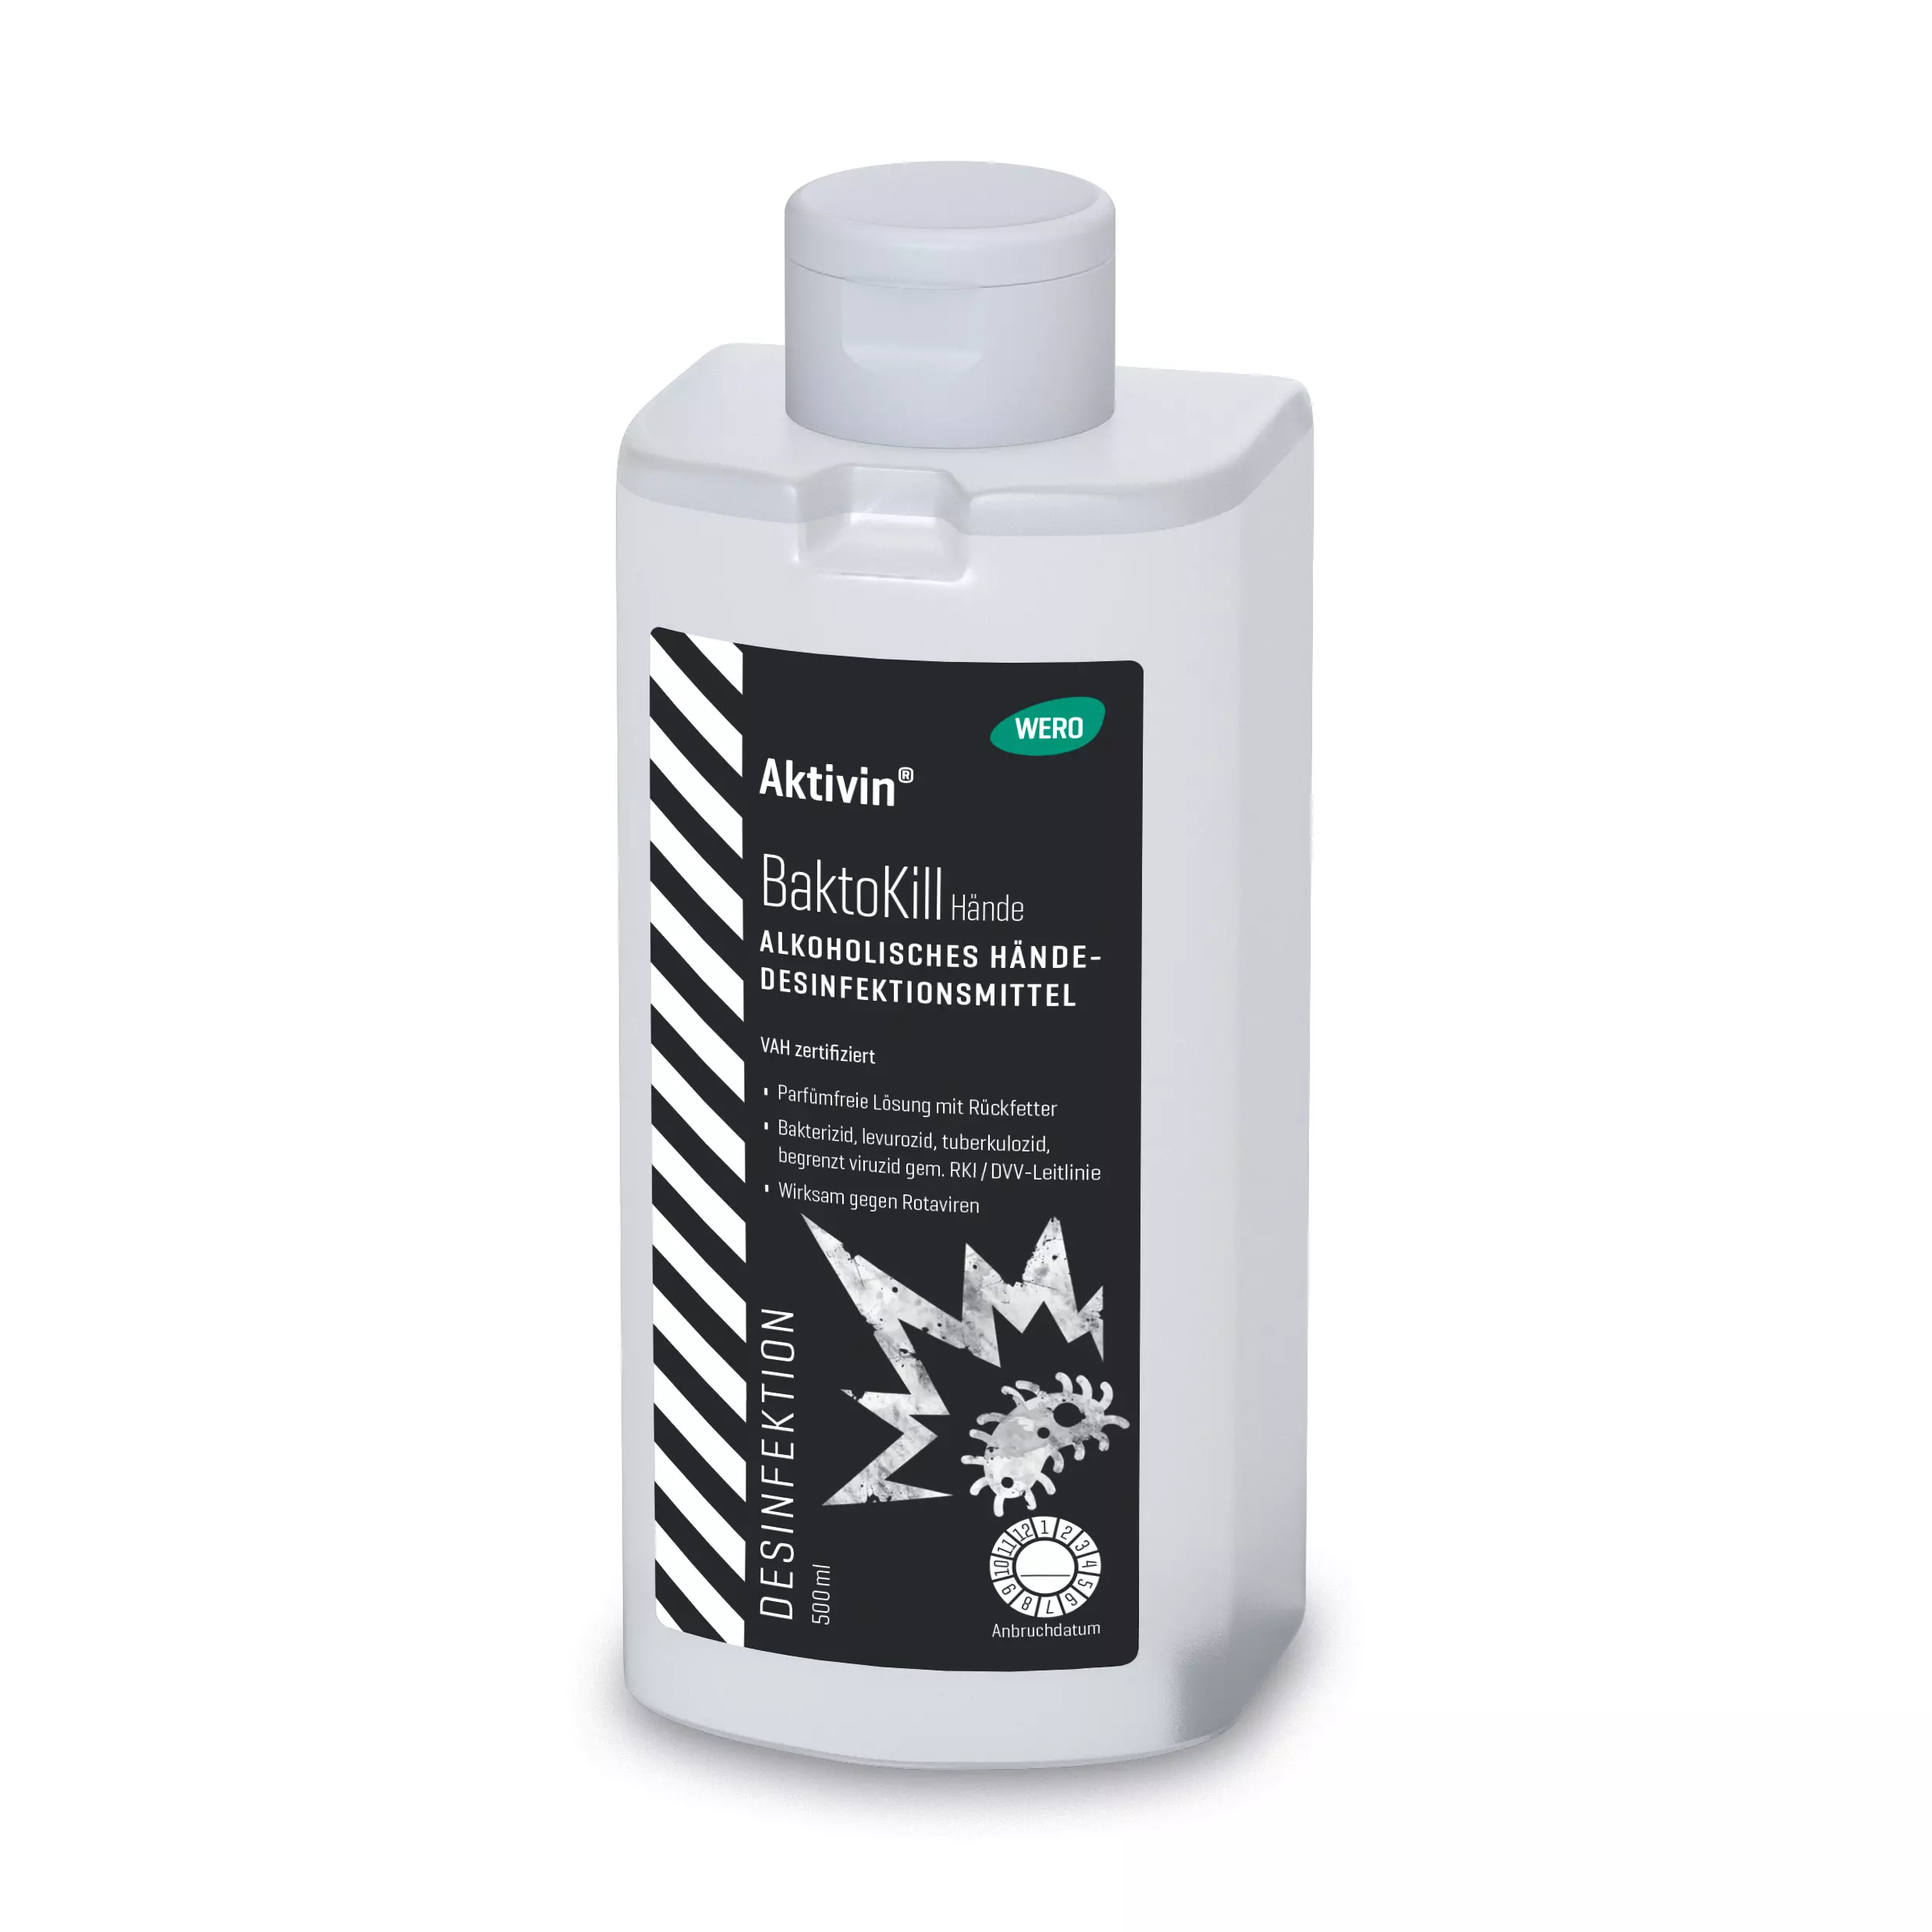 Hand disinfectant Aktivin® BaktoKill - Euro bottle, 500 ml